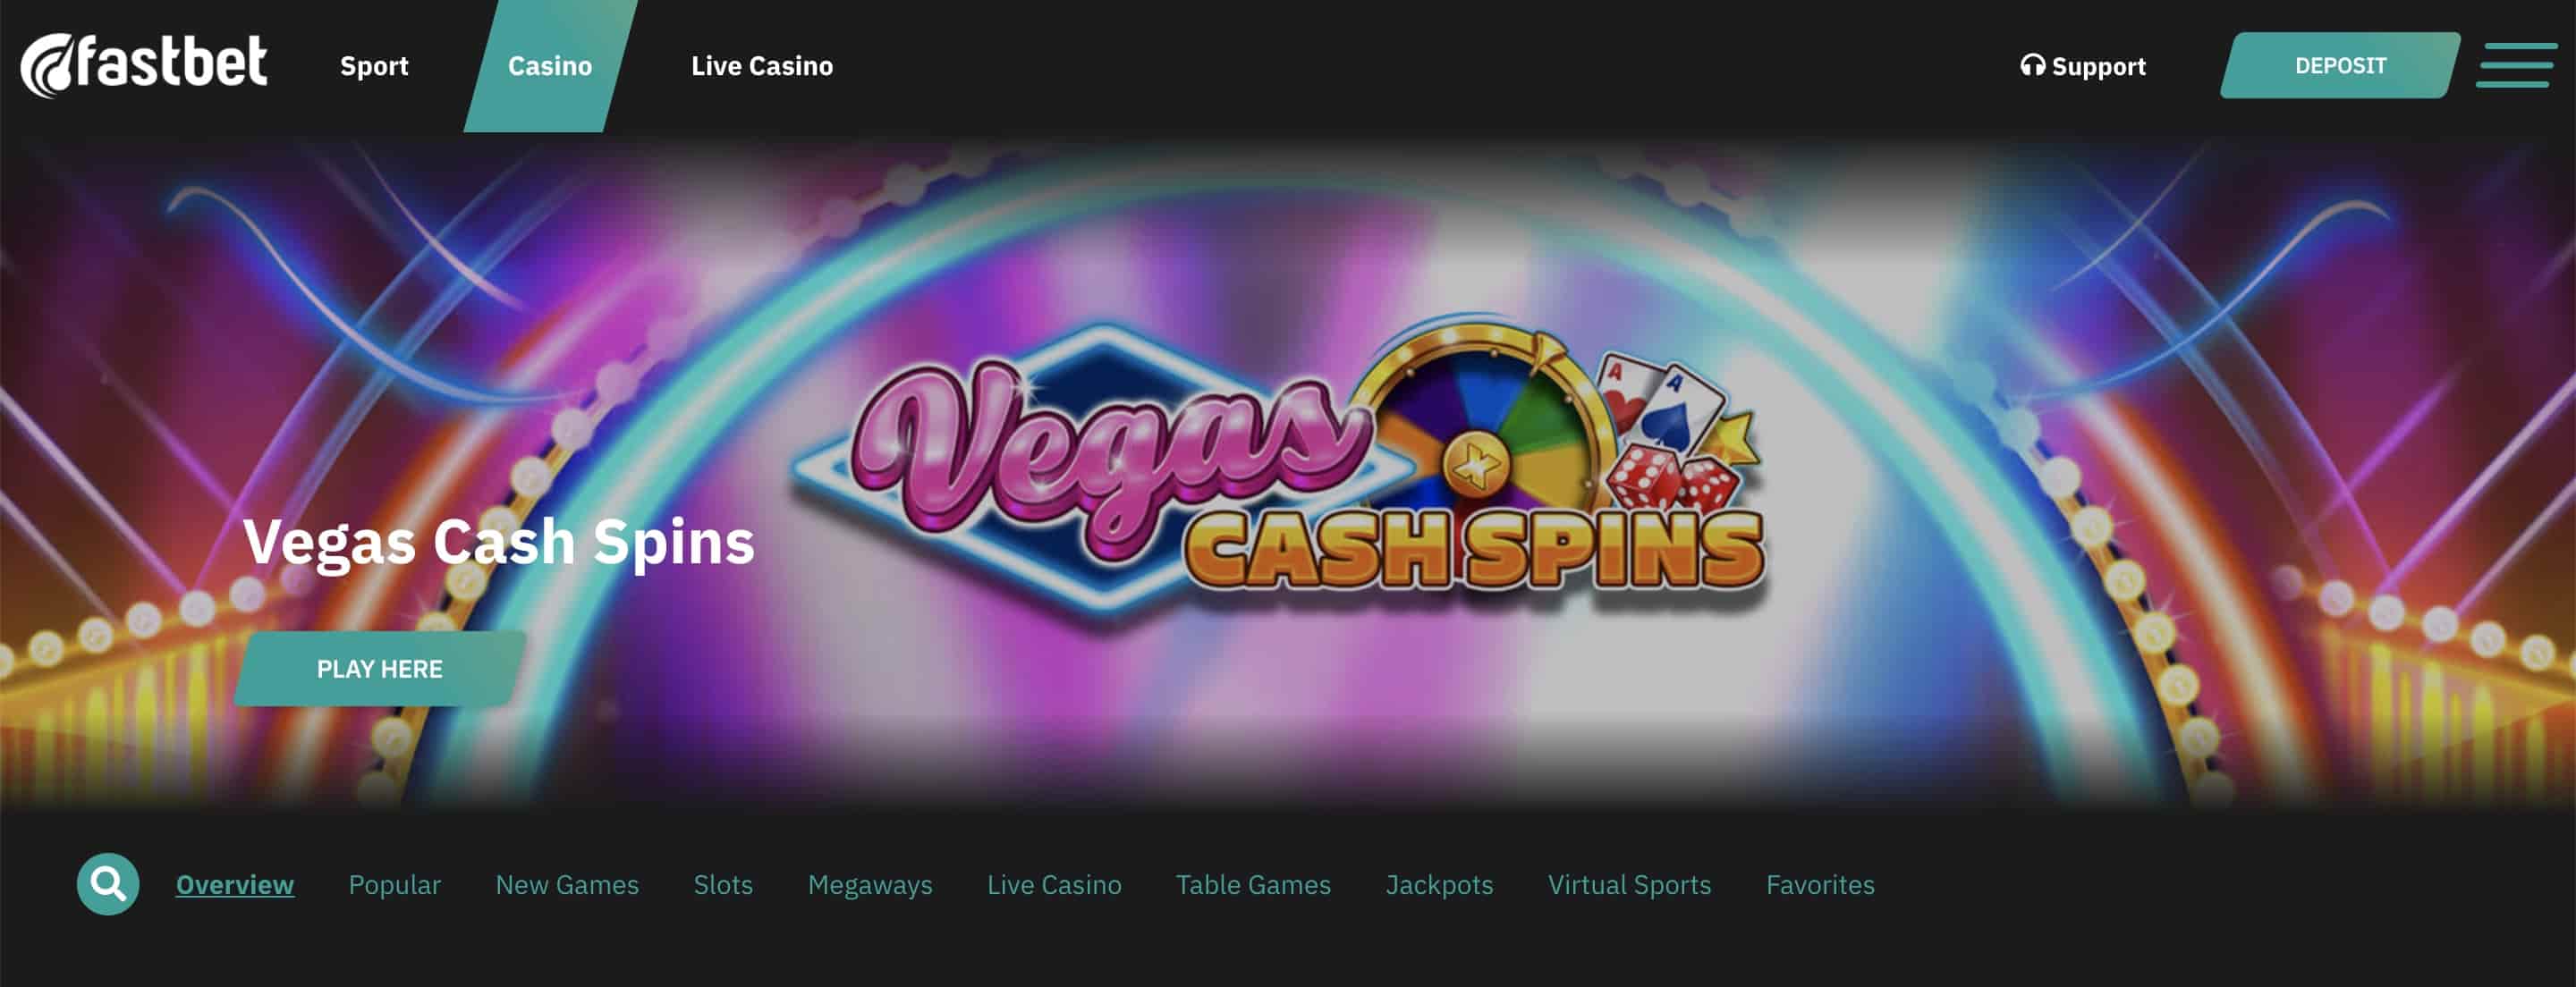 Fastbet Casino Startseite